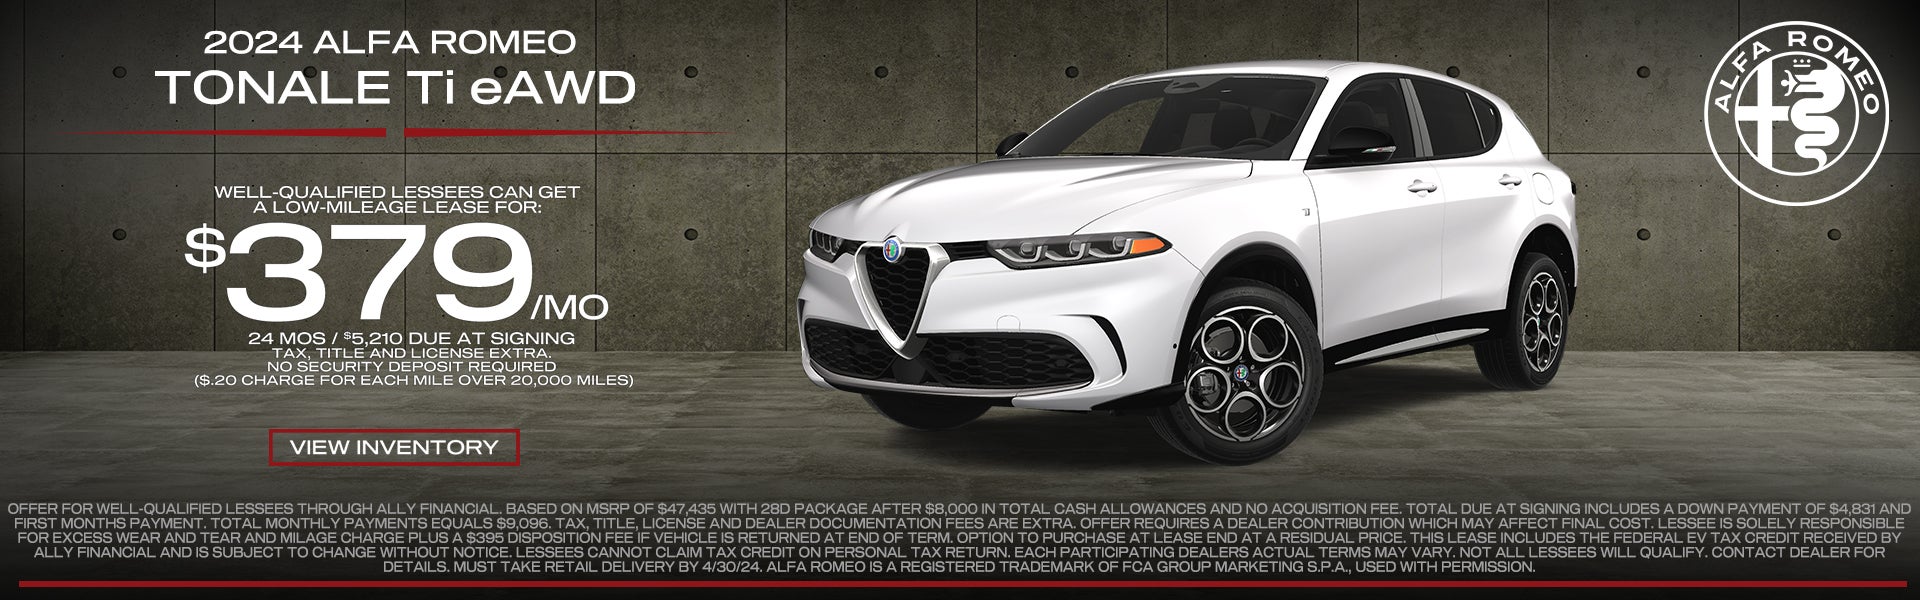 2024 Alfa Romeo Tonale TI eAWD lease $379/mo